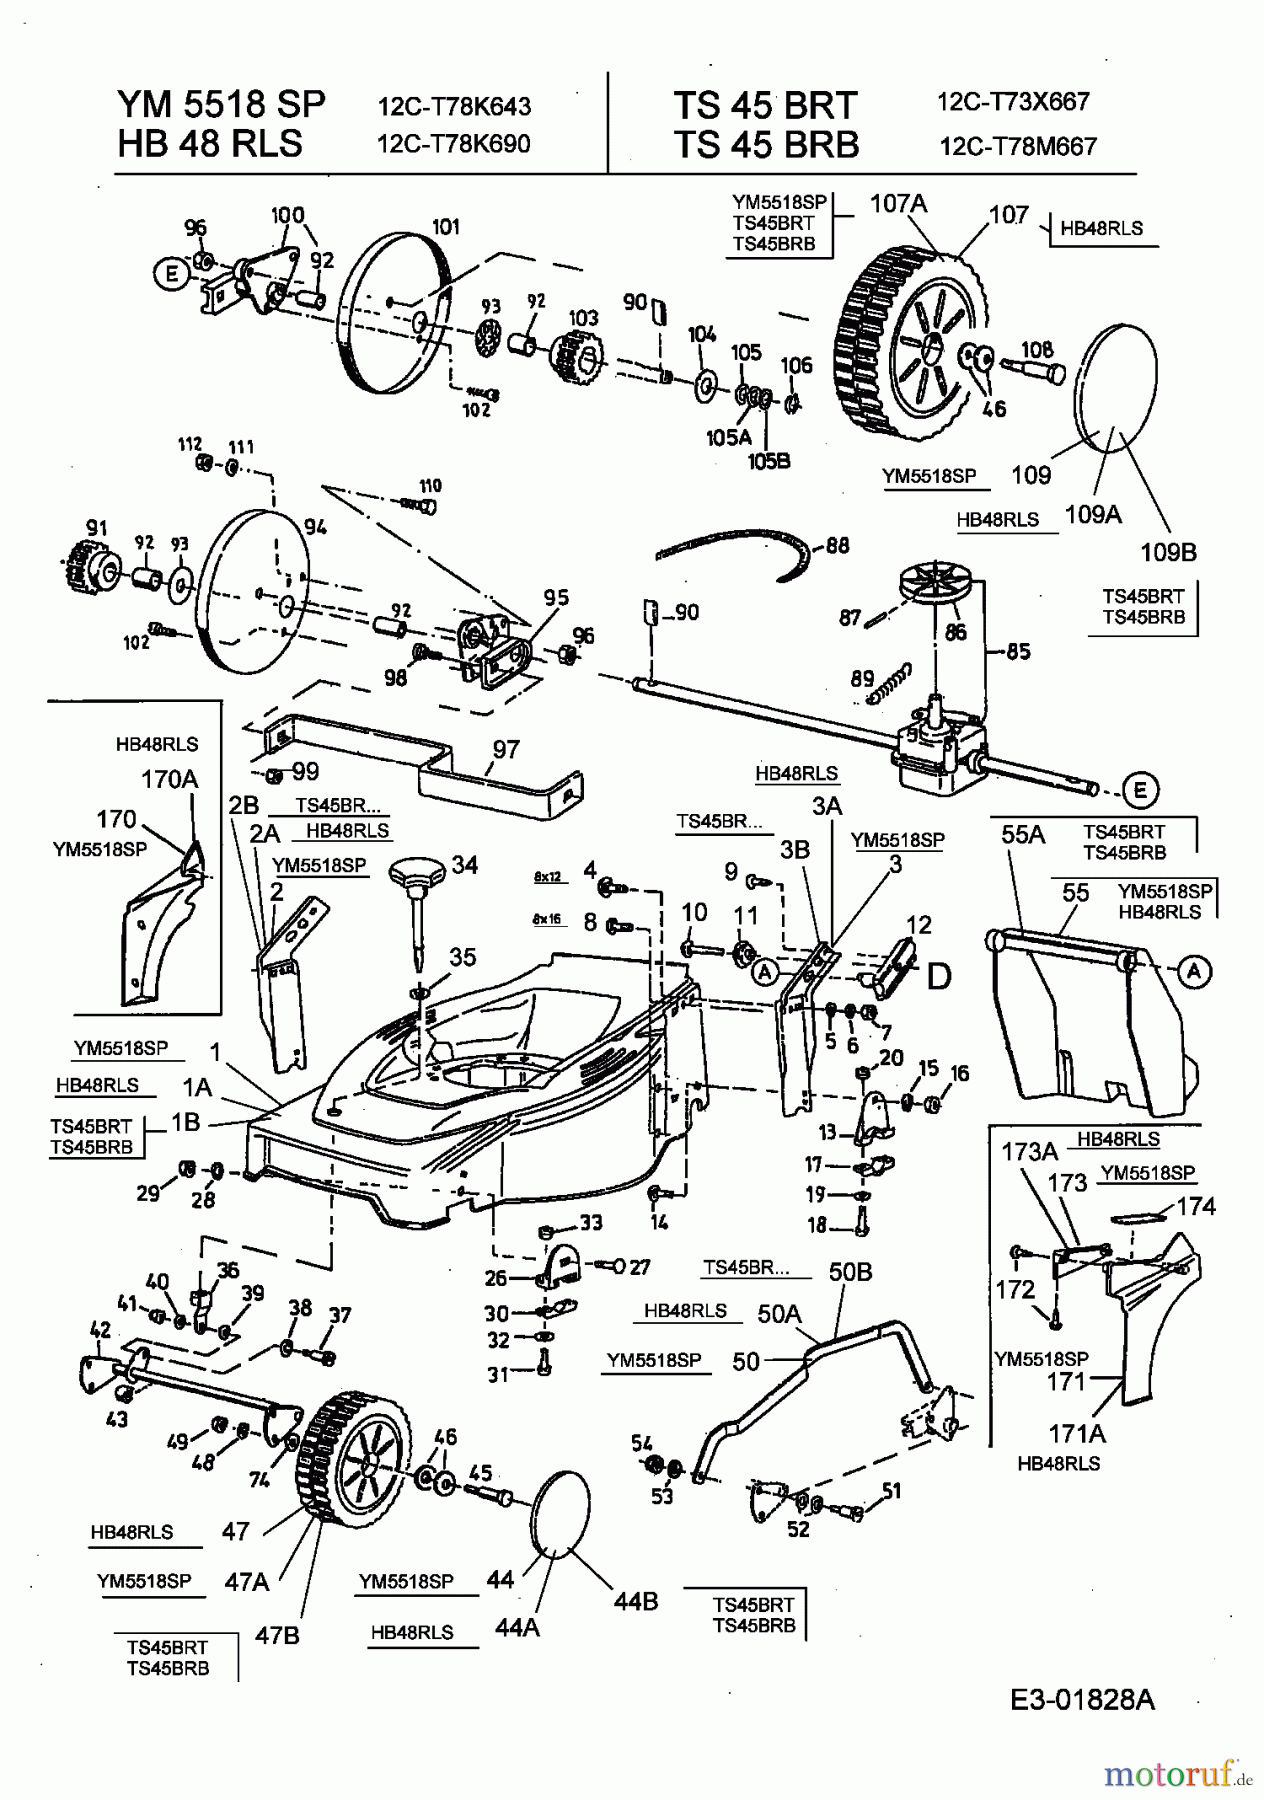  Turbo Silent Motormäher mit Antrieb TS 45 BR-T 12C-T73X667  (2003) Getriebe, Räder, Schnitthöhenverstellung